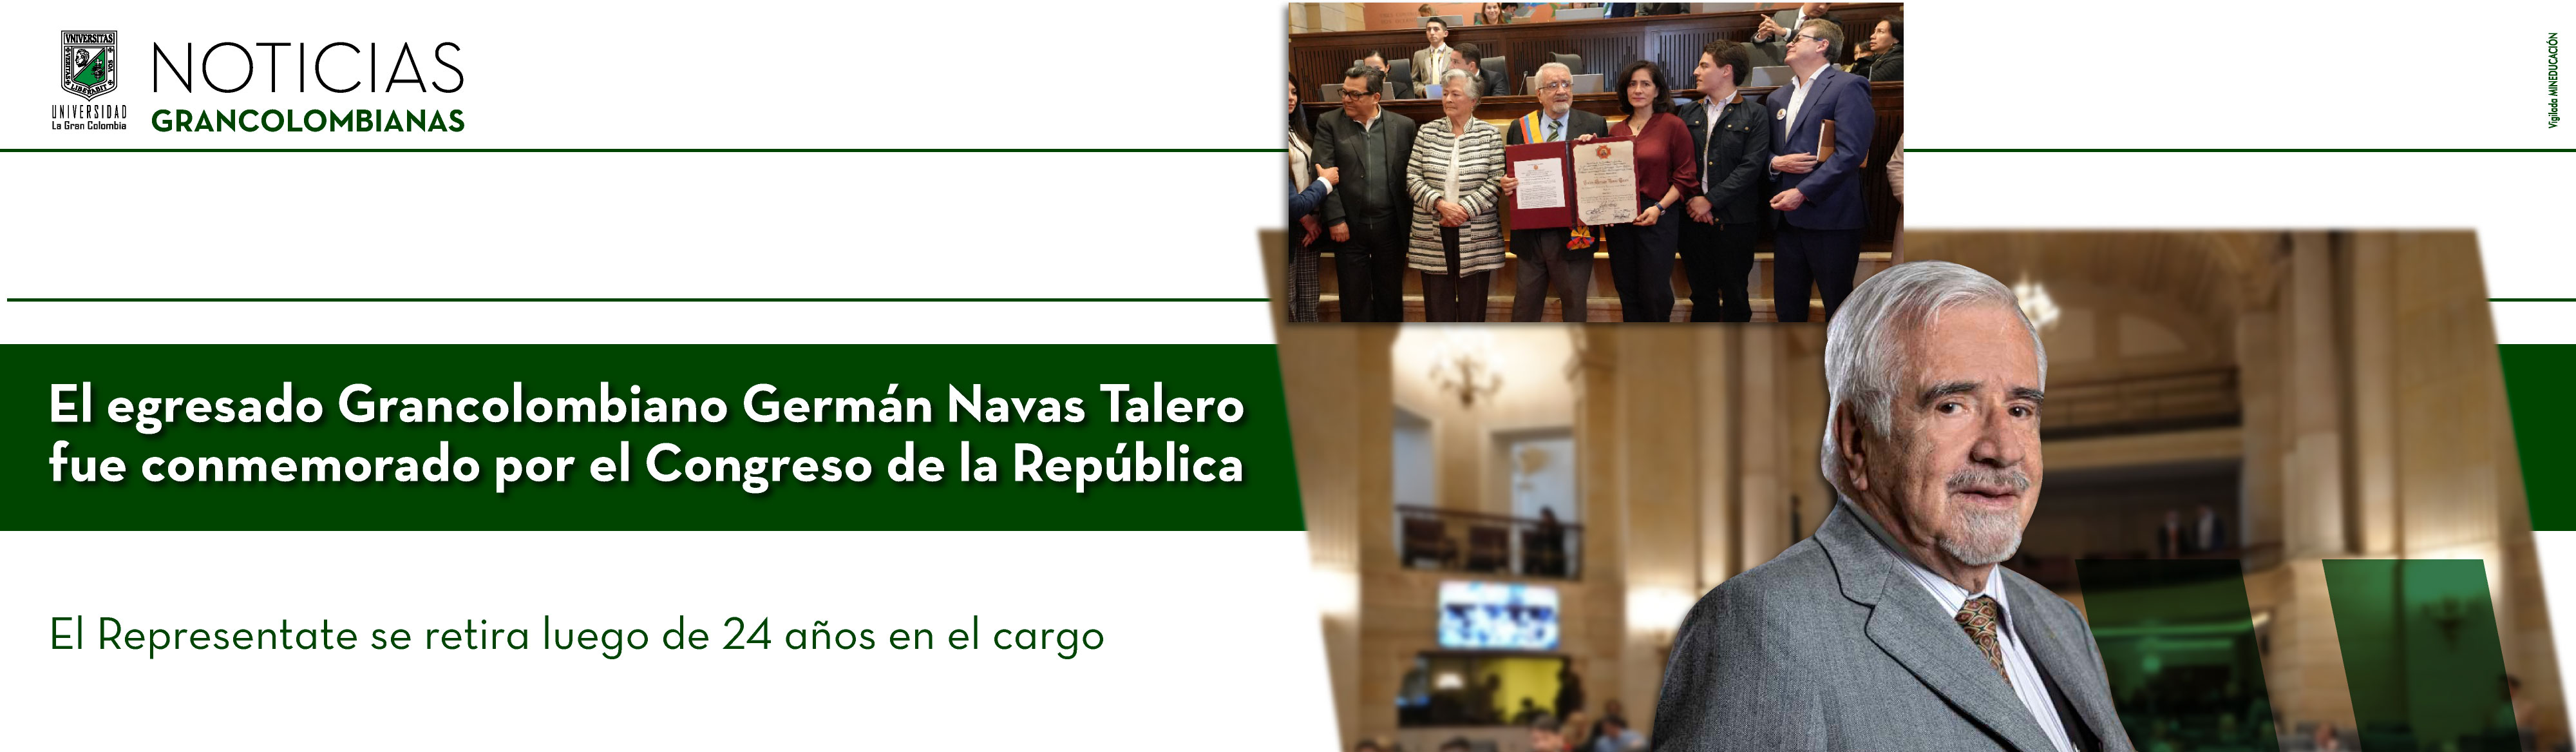 El egresado grancolombiano Germán Navas Talero fue reconocido por el Congreso de la República por su exitosa gestión